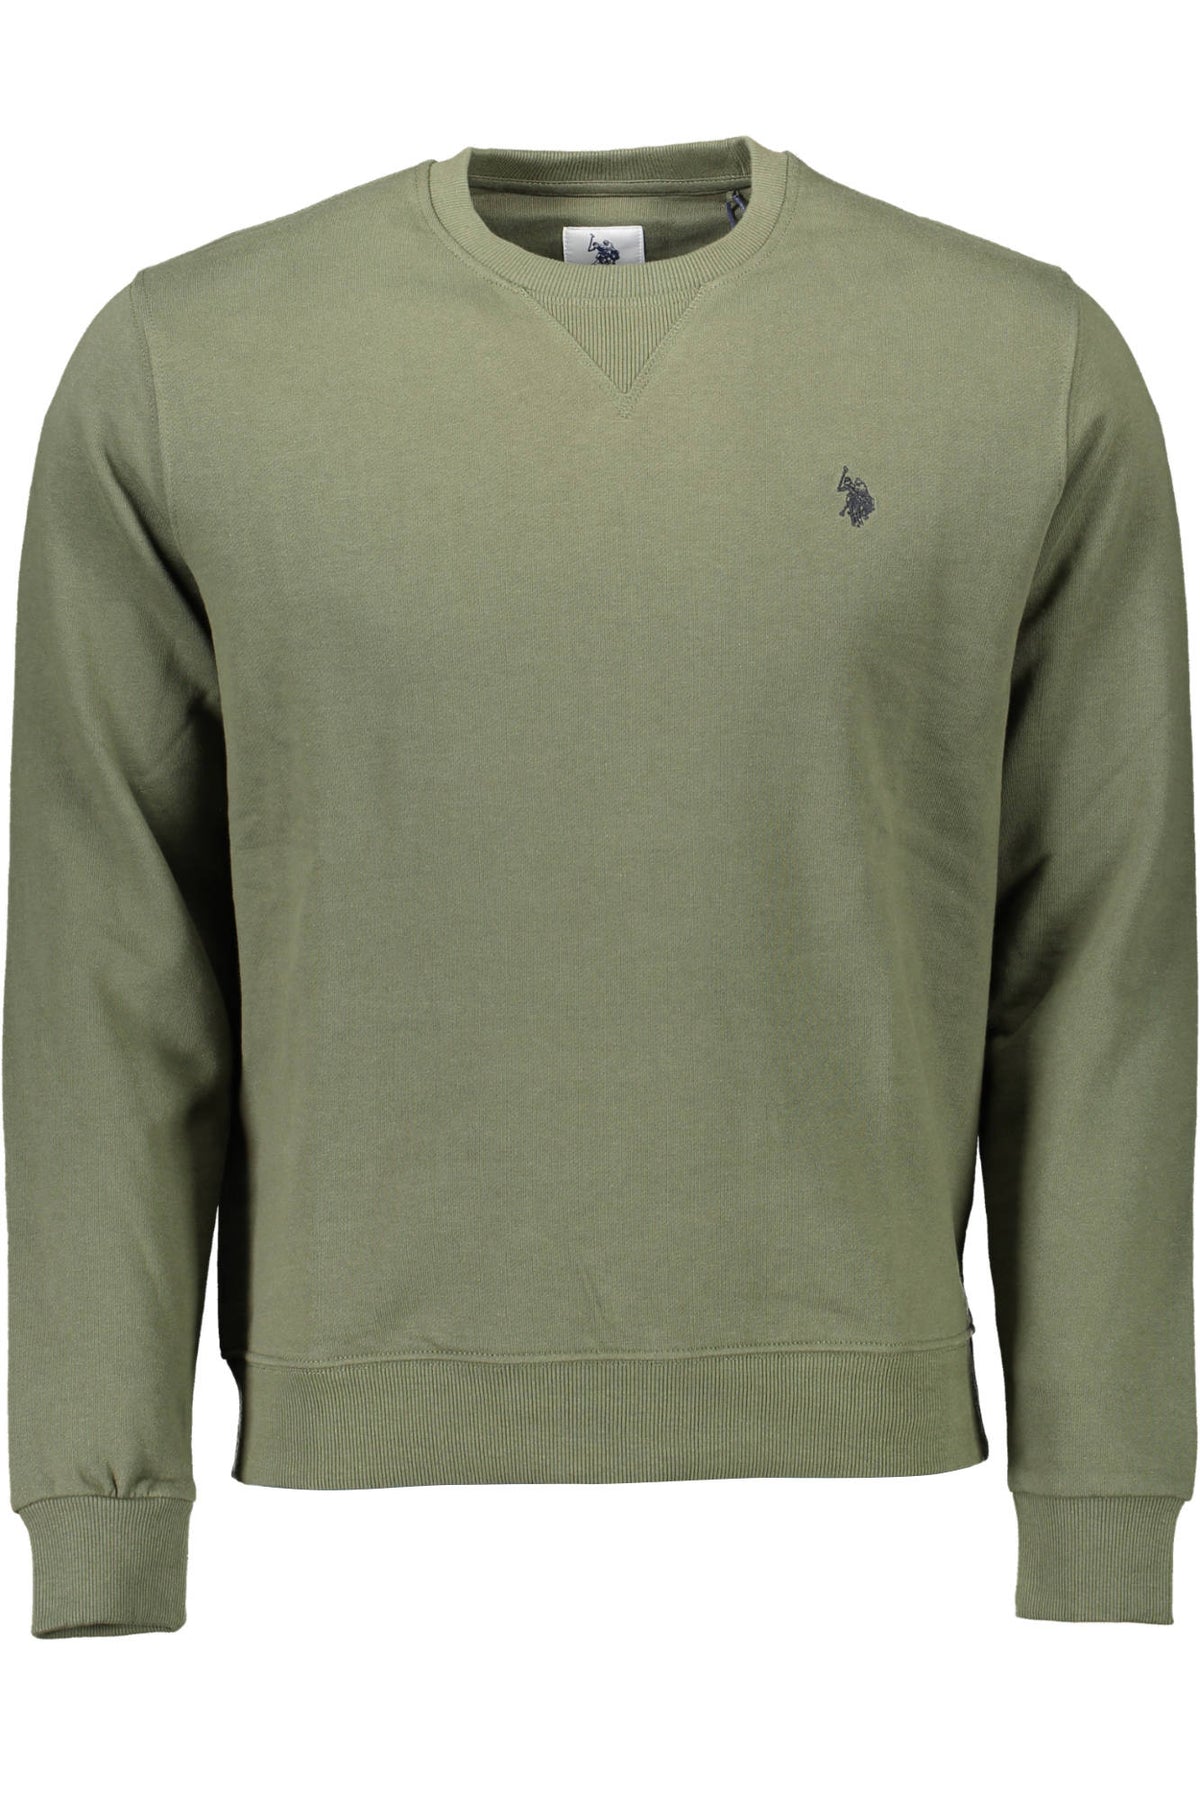 U.S. POLO Herren Pullover Sweatshirt Shirt Oberteil mit Rundhalsausschnitt, langärmlig